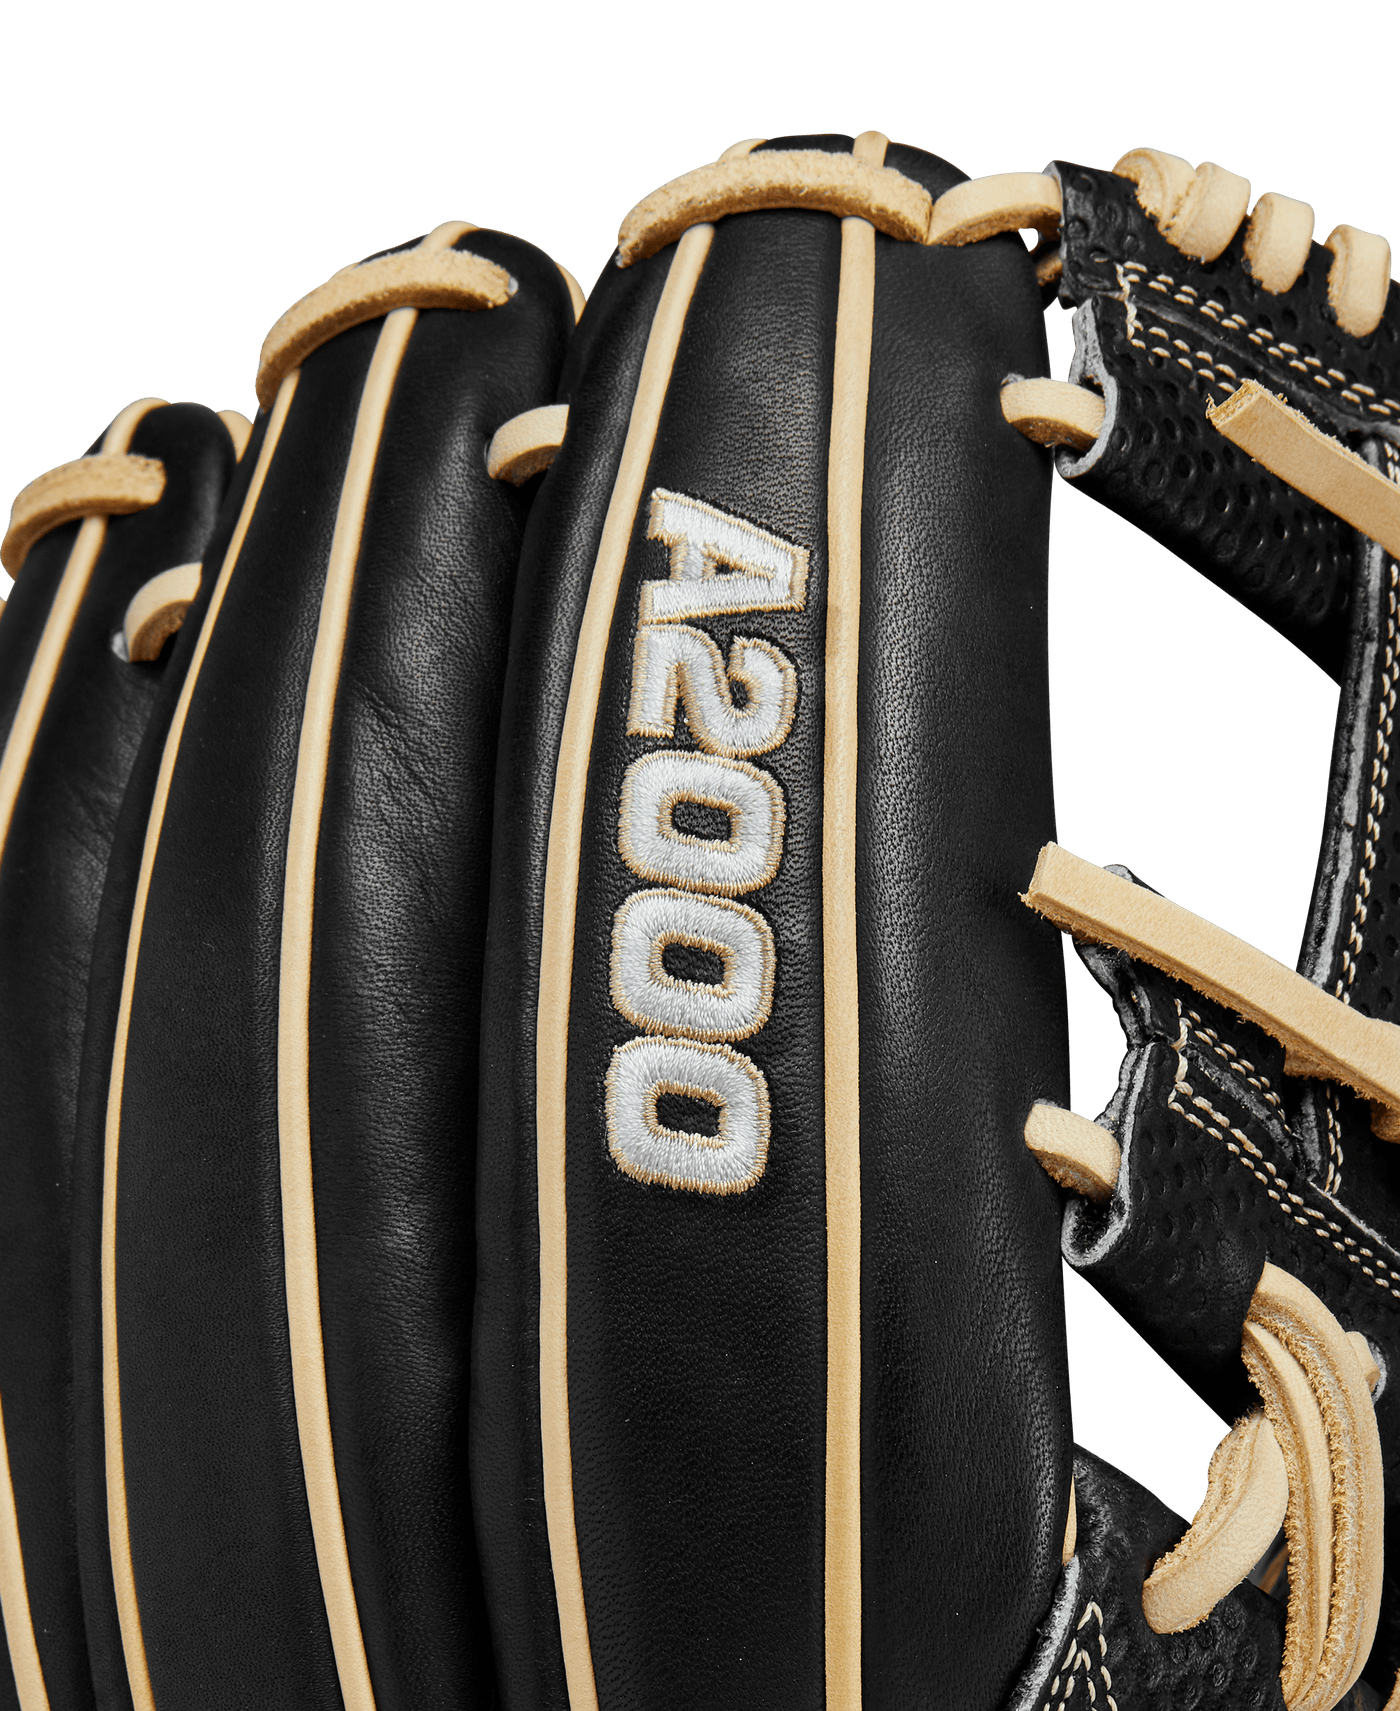 Wilson A2000 SC1787 11.75 Infield Baseball Glove 2022 (Right Hand)